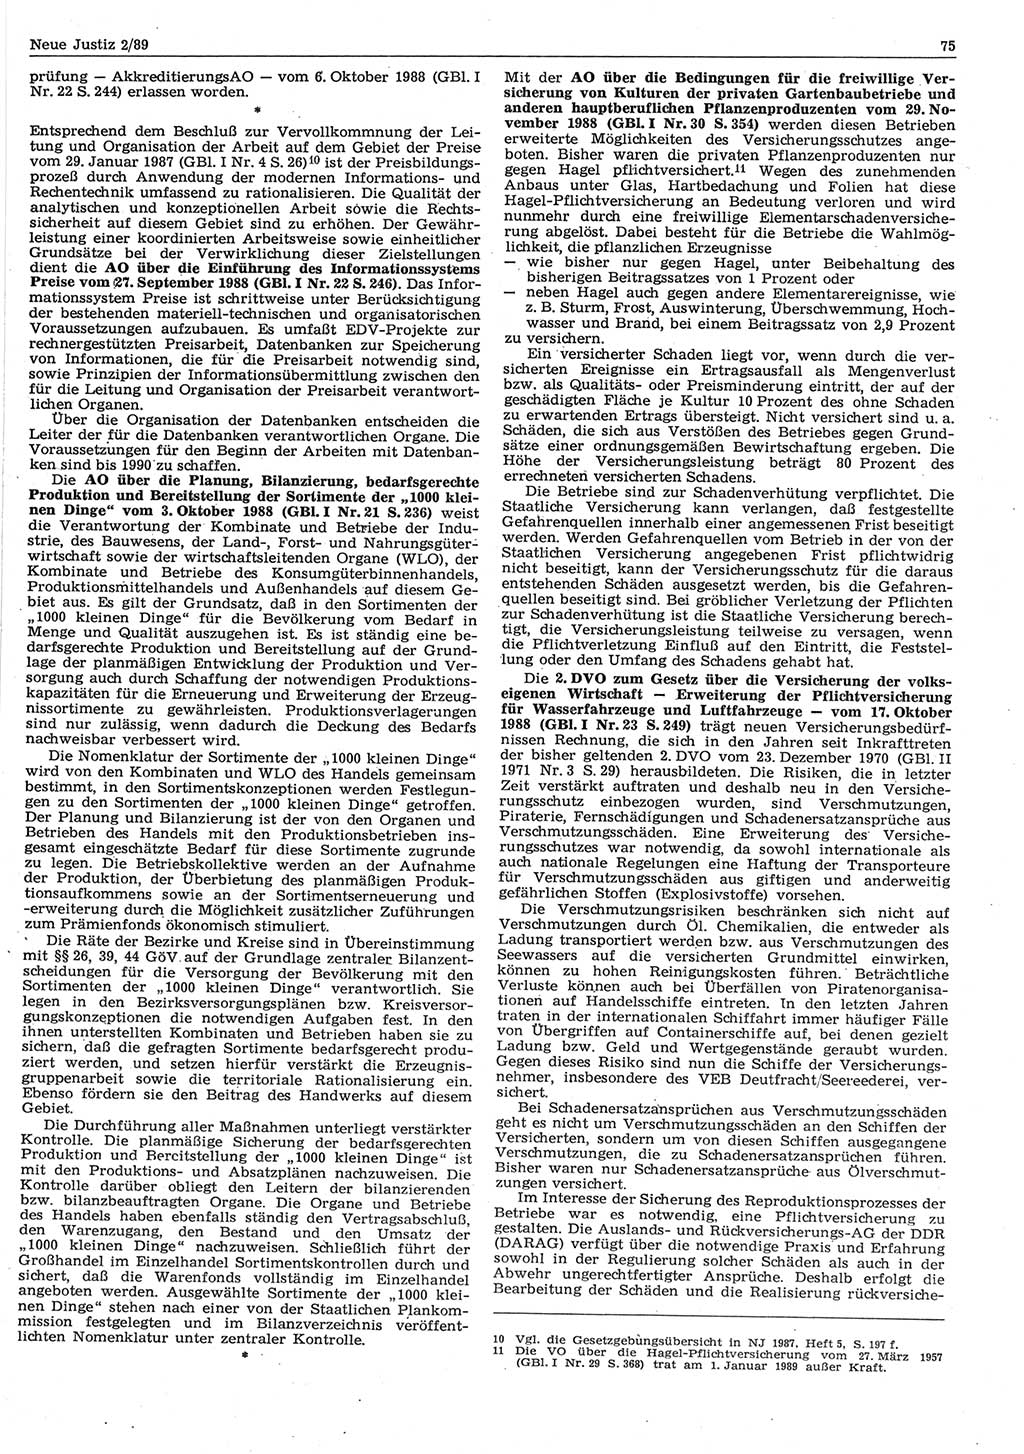 Neue Justiz (NJ), Zeitschrift für sozialistisches Recht und Gesetzlichkeit [Deutsche Demokratische Republik (DDR)], 43. Jahrgang 1989, Seite 75 (NJ DDR 1989, S. 75)